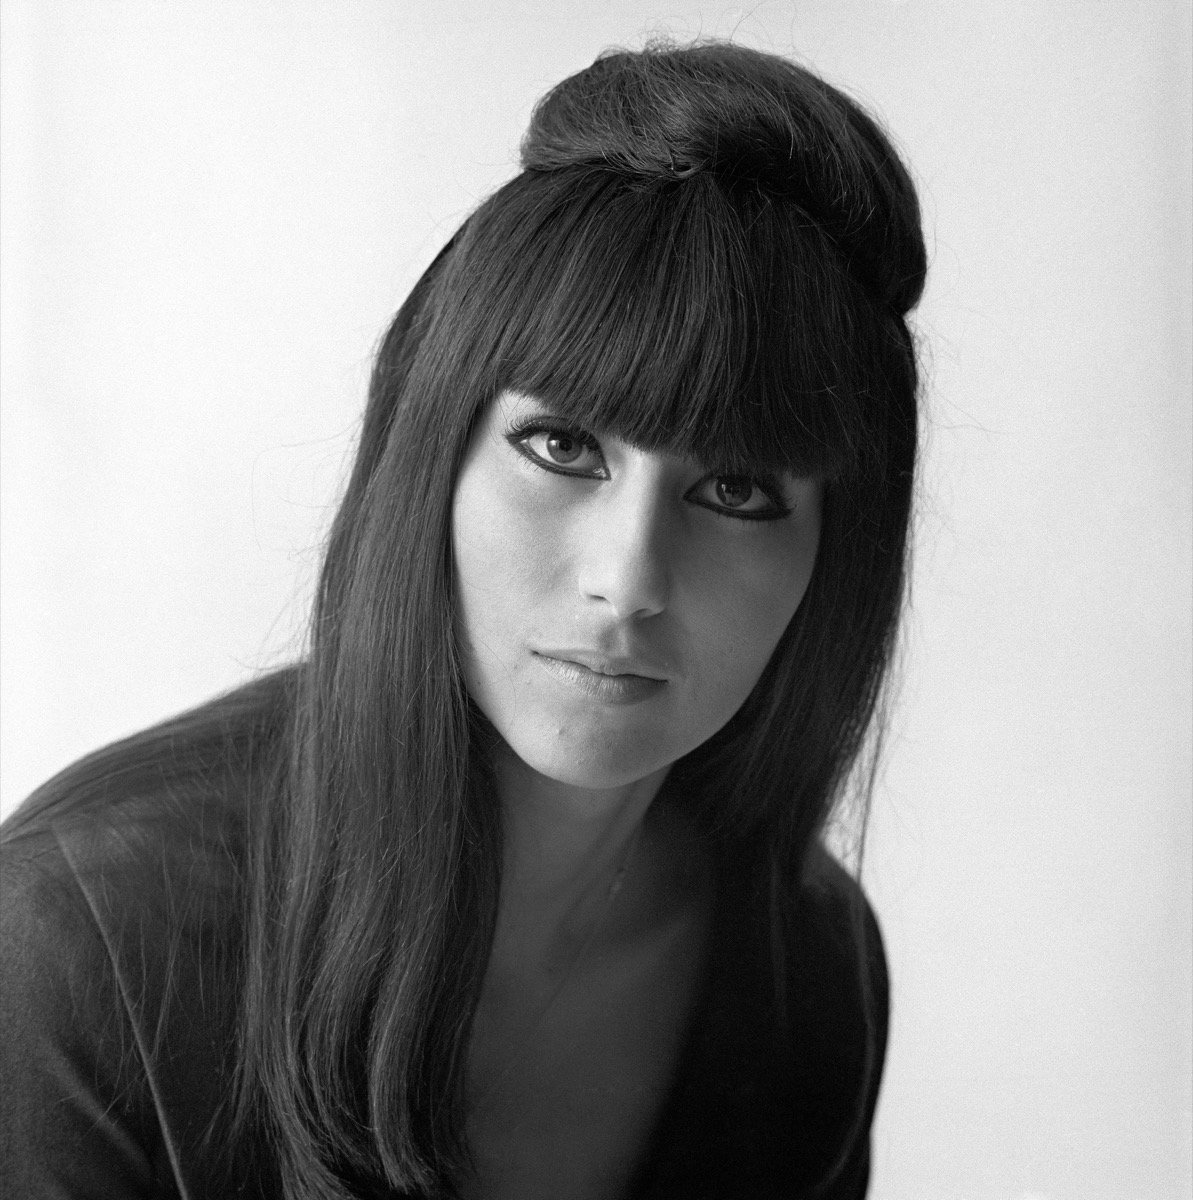 Cher in 1964